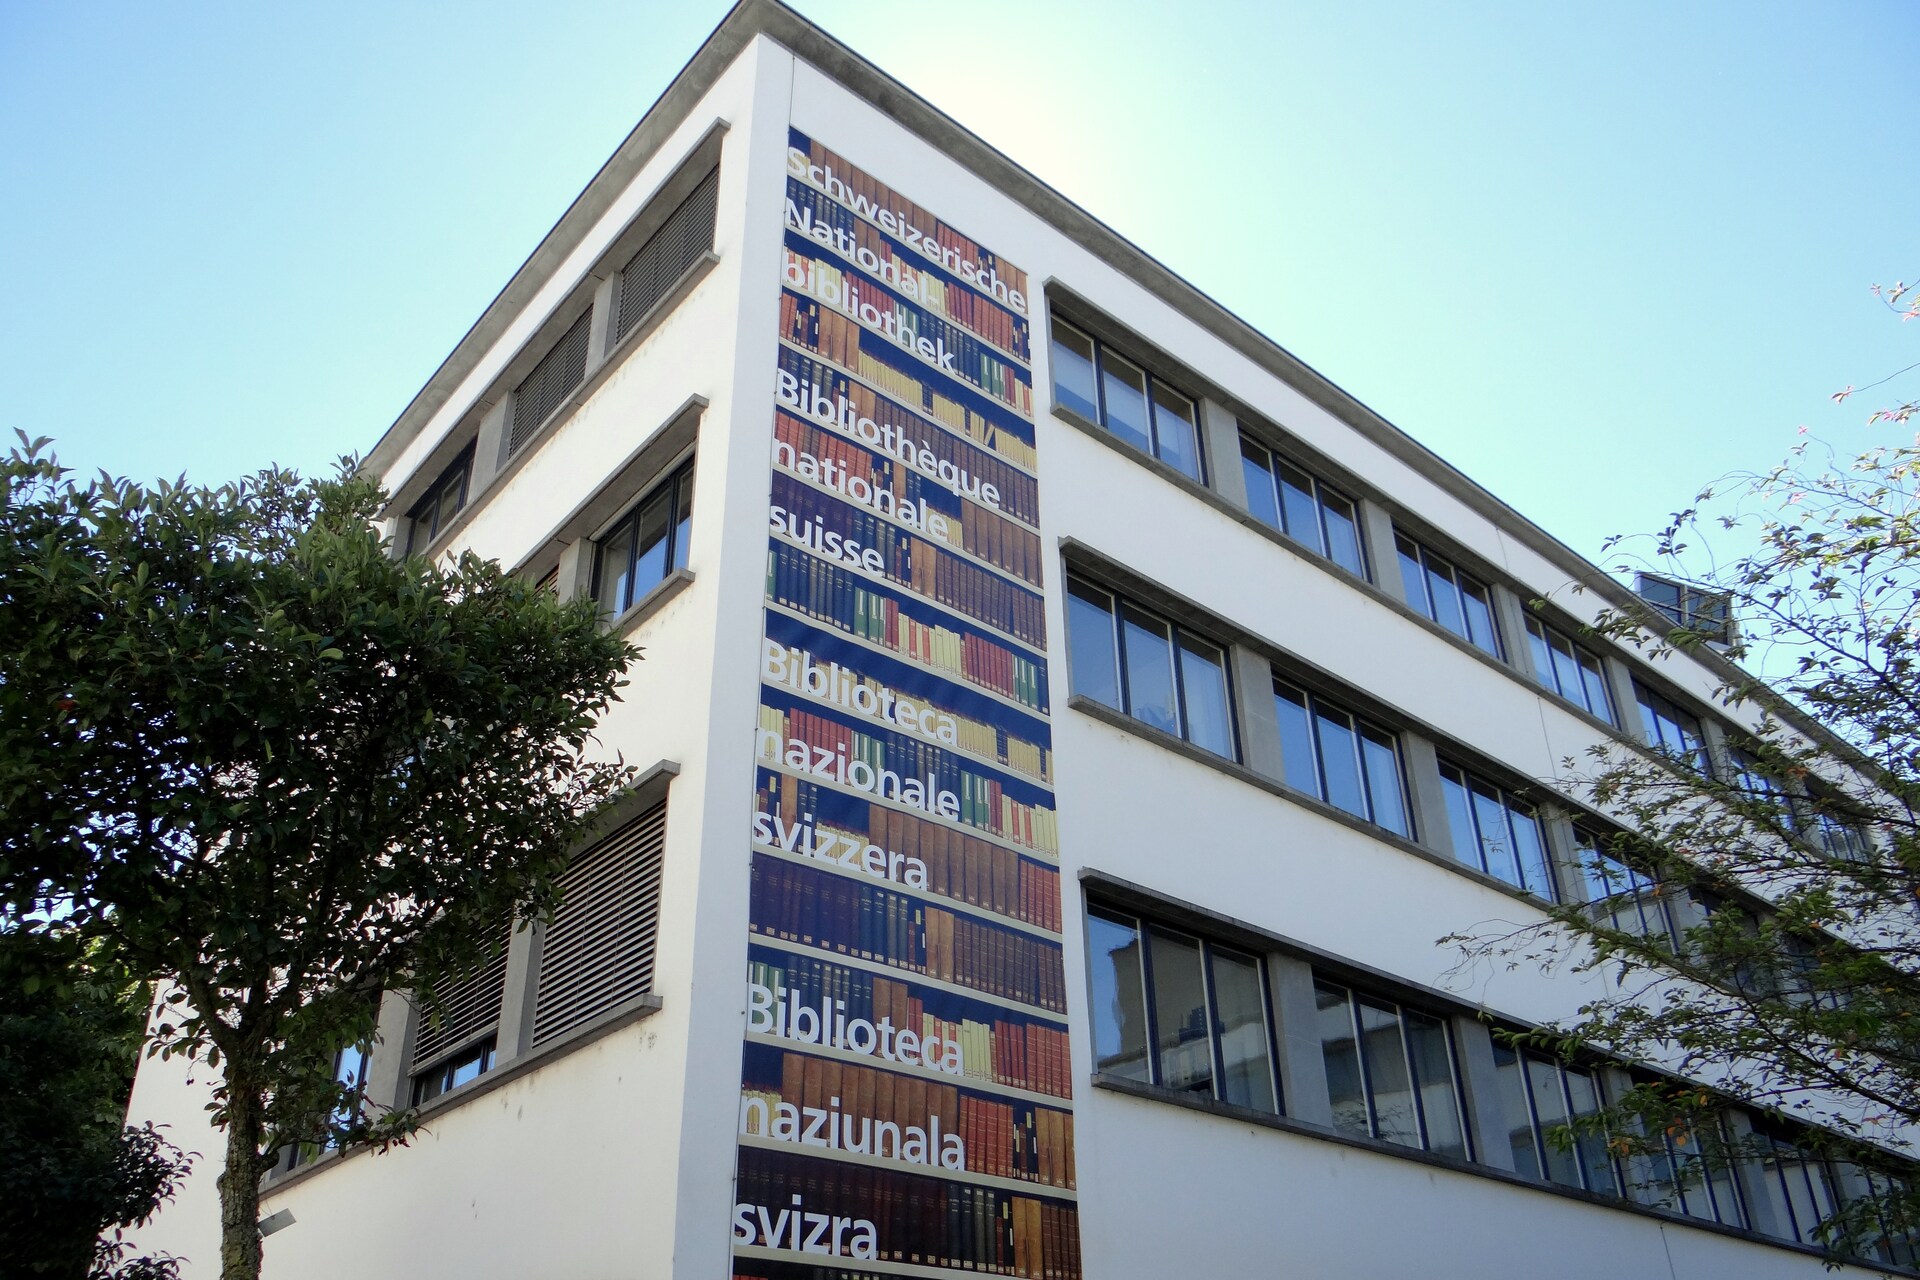 Biblioteca Națională Elvețiană: NL colectează Helvetica, adică texte, imagini și documente sonore referitoare la Elveția, păstrând astfel memoria colectivă a țării din Berna